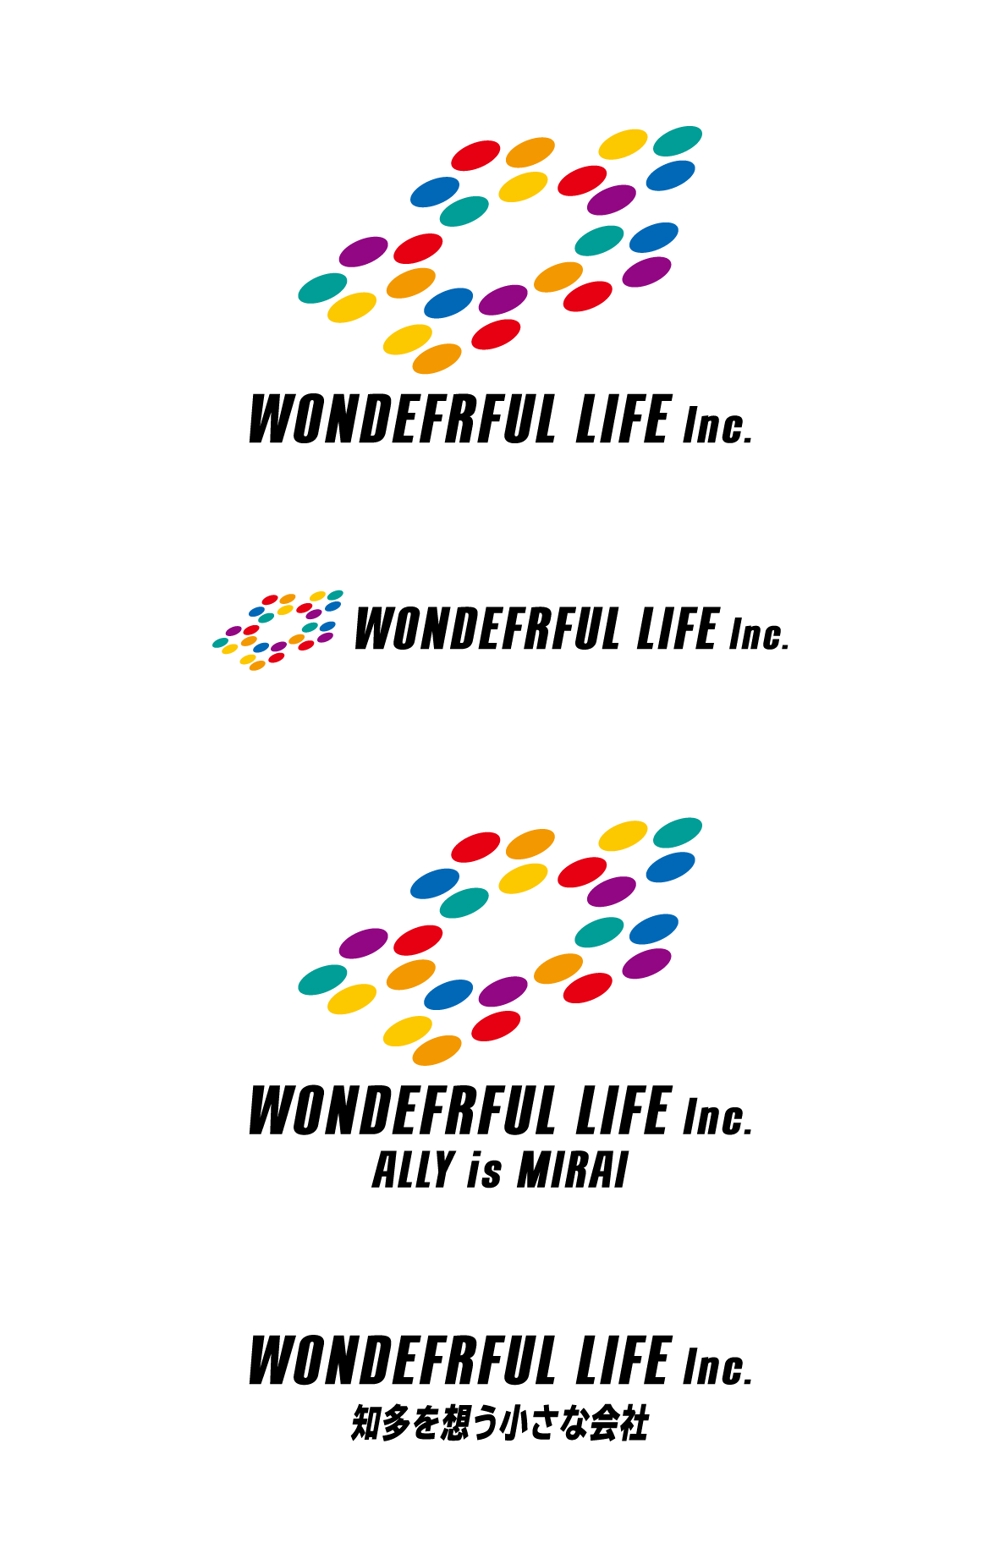 WONDEFRFUL LIFE Inc_a_logo_main01.jpg